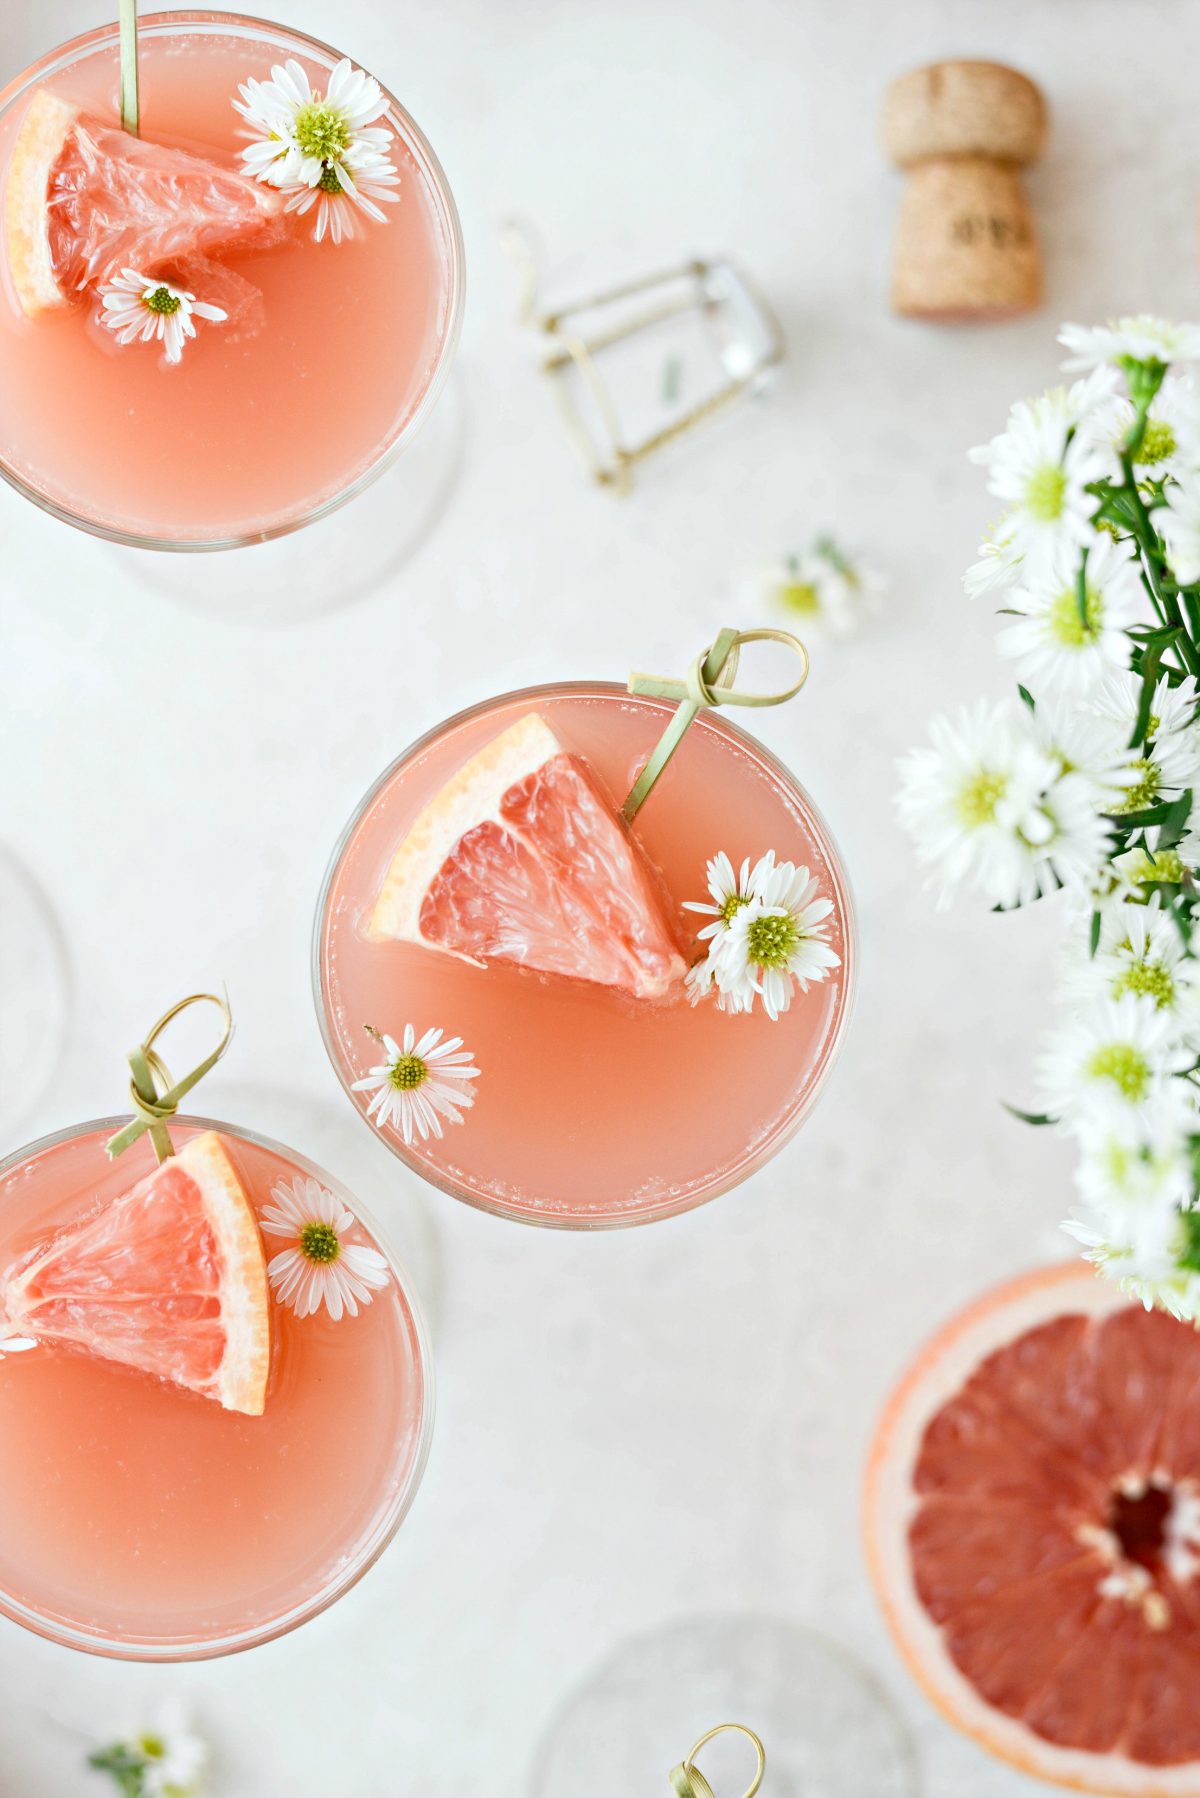 grapefrukt Rosacillimimosas l SimplyScratch.com #vuxen #dryck # grapefrukt #rose #mimosa # påsk #brunch #mothersday